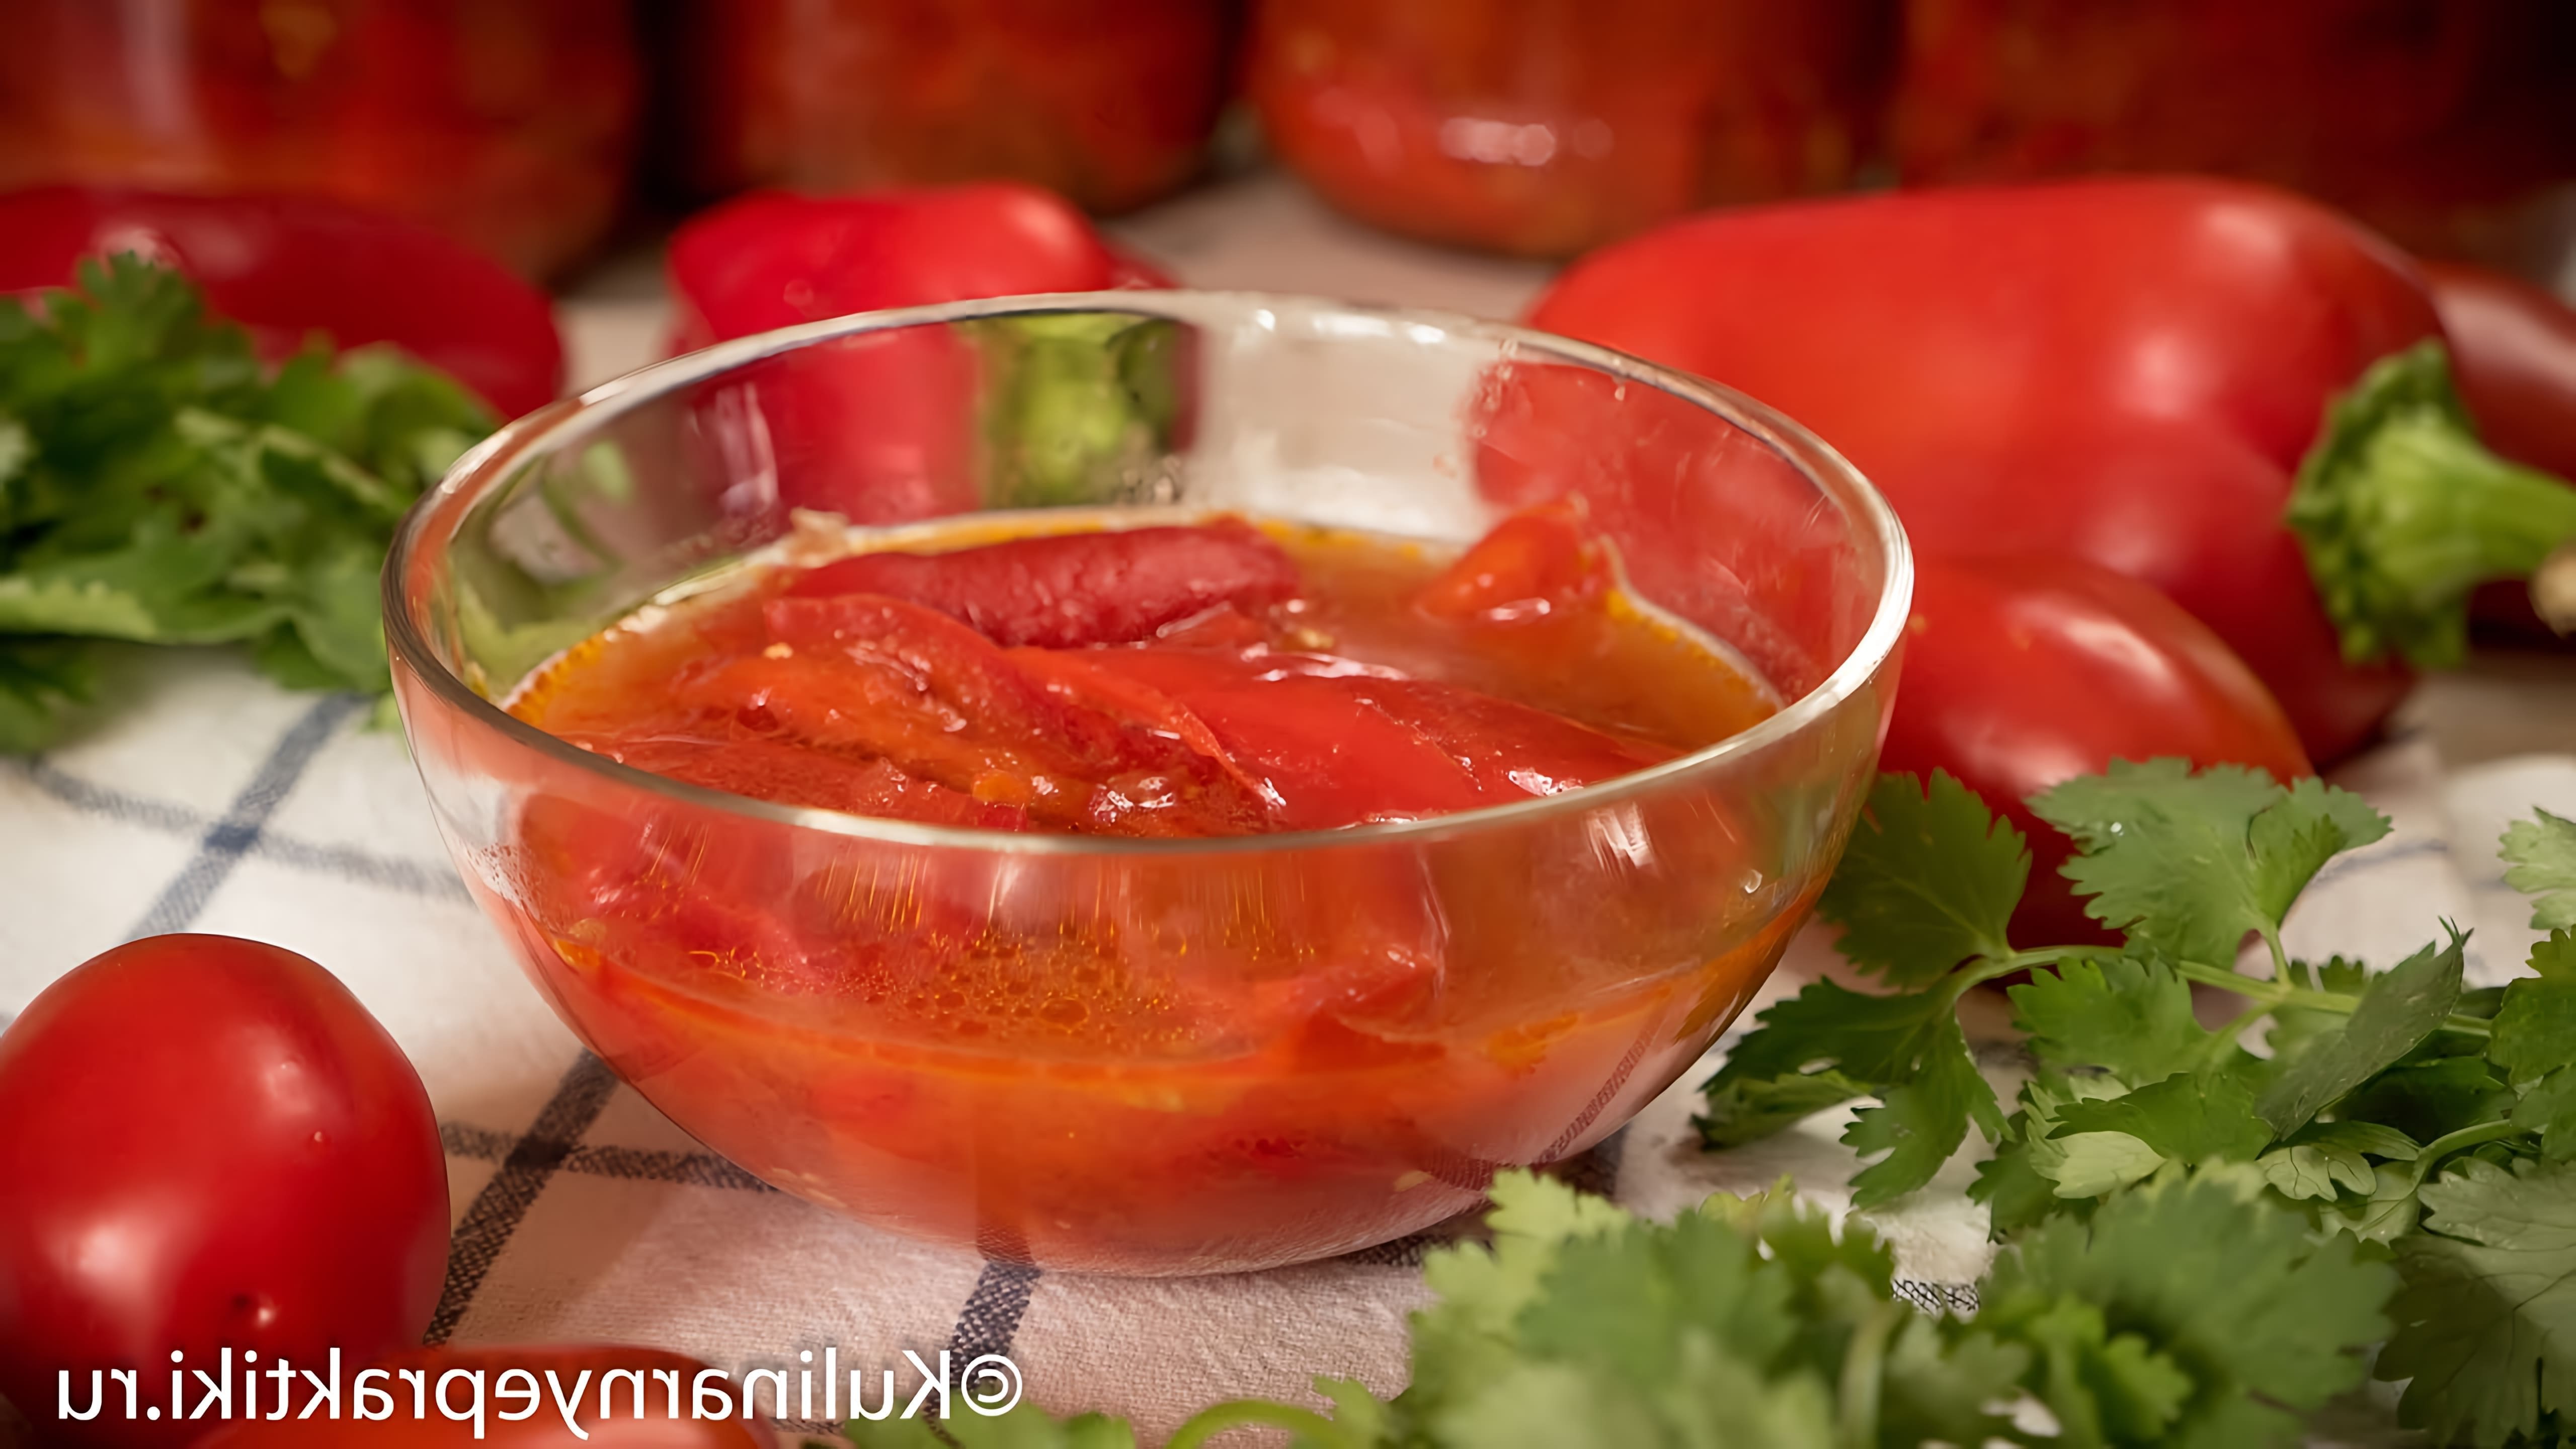 В этом видео демонстрируется рецепт приготовления сладкого перца с помидорами на зиму